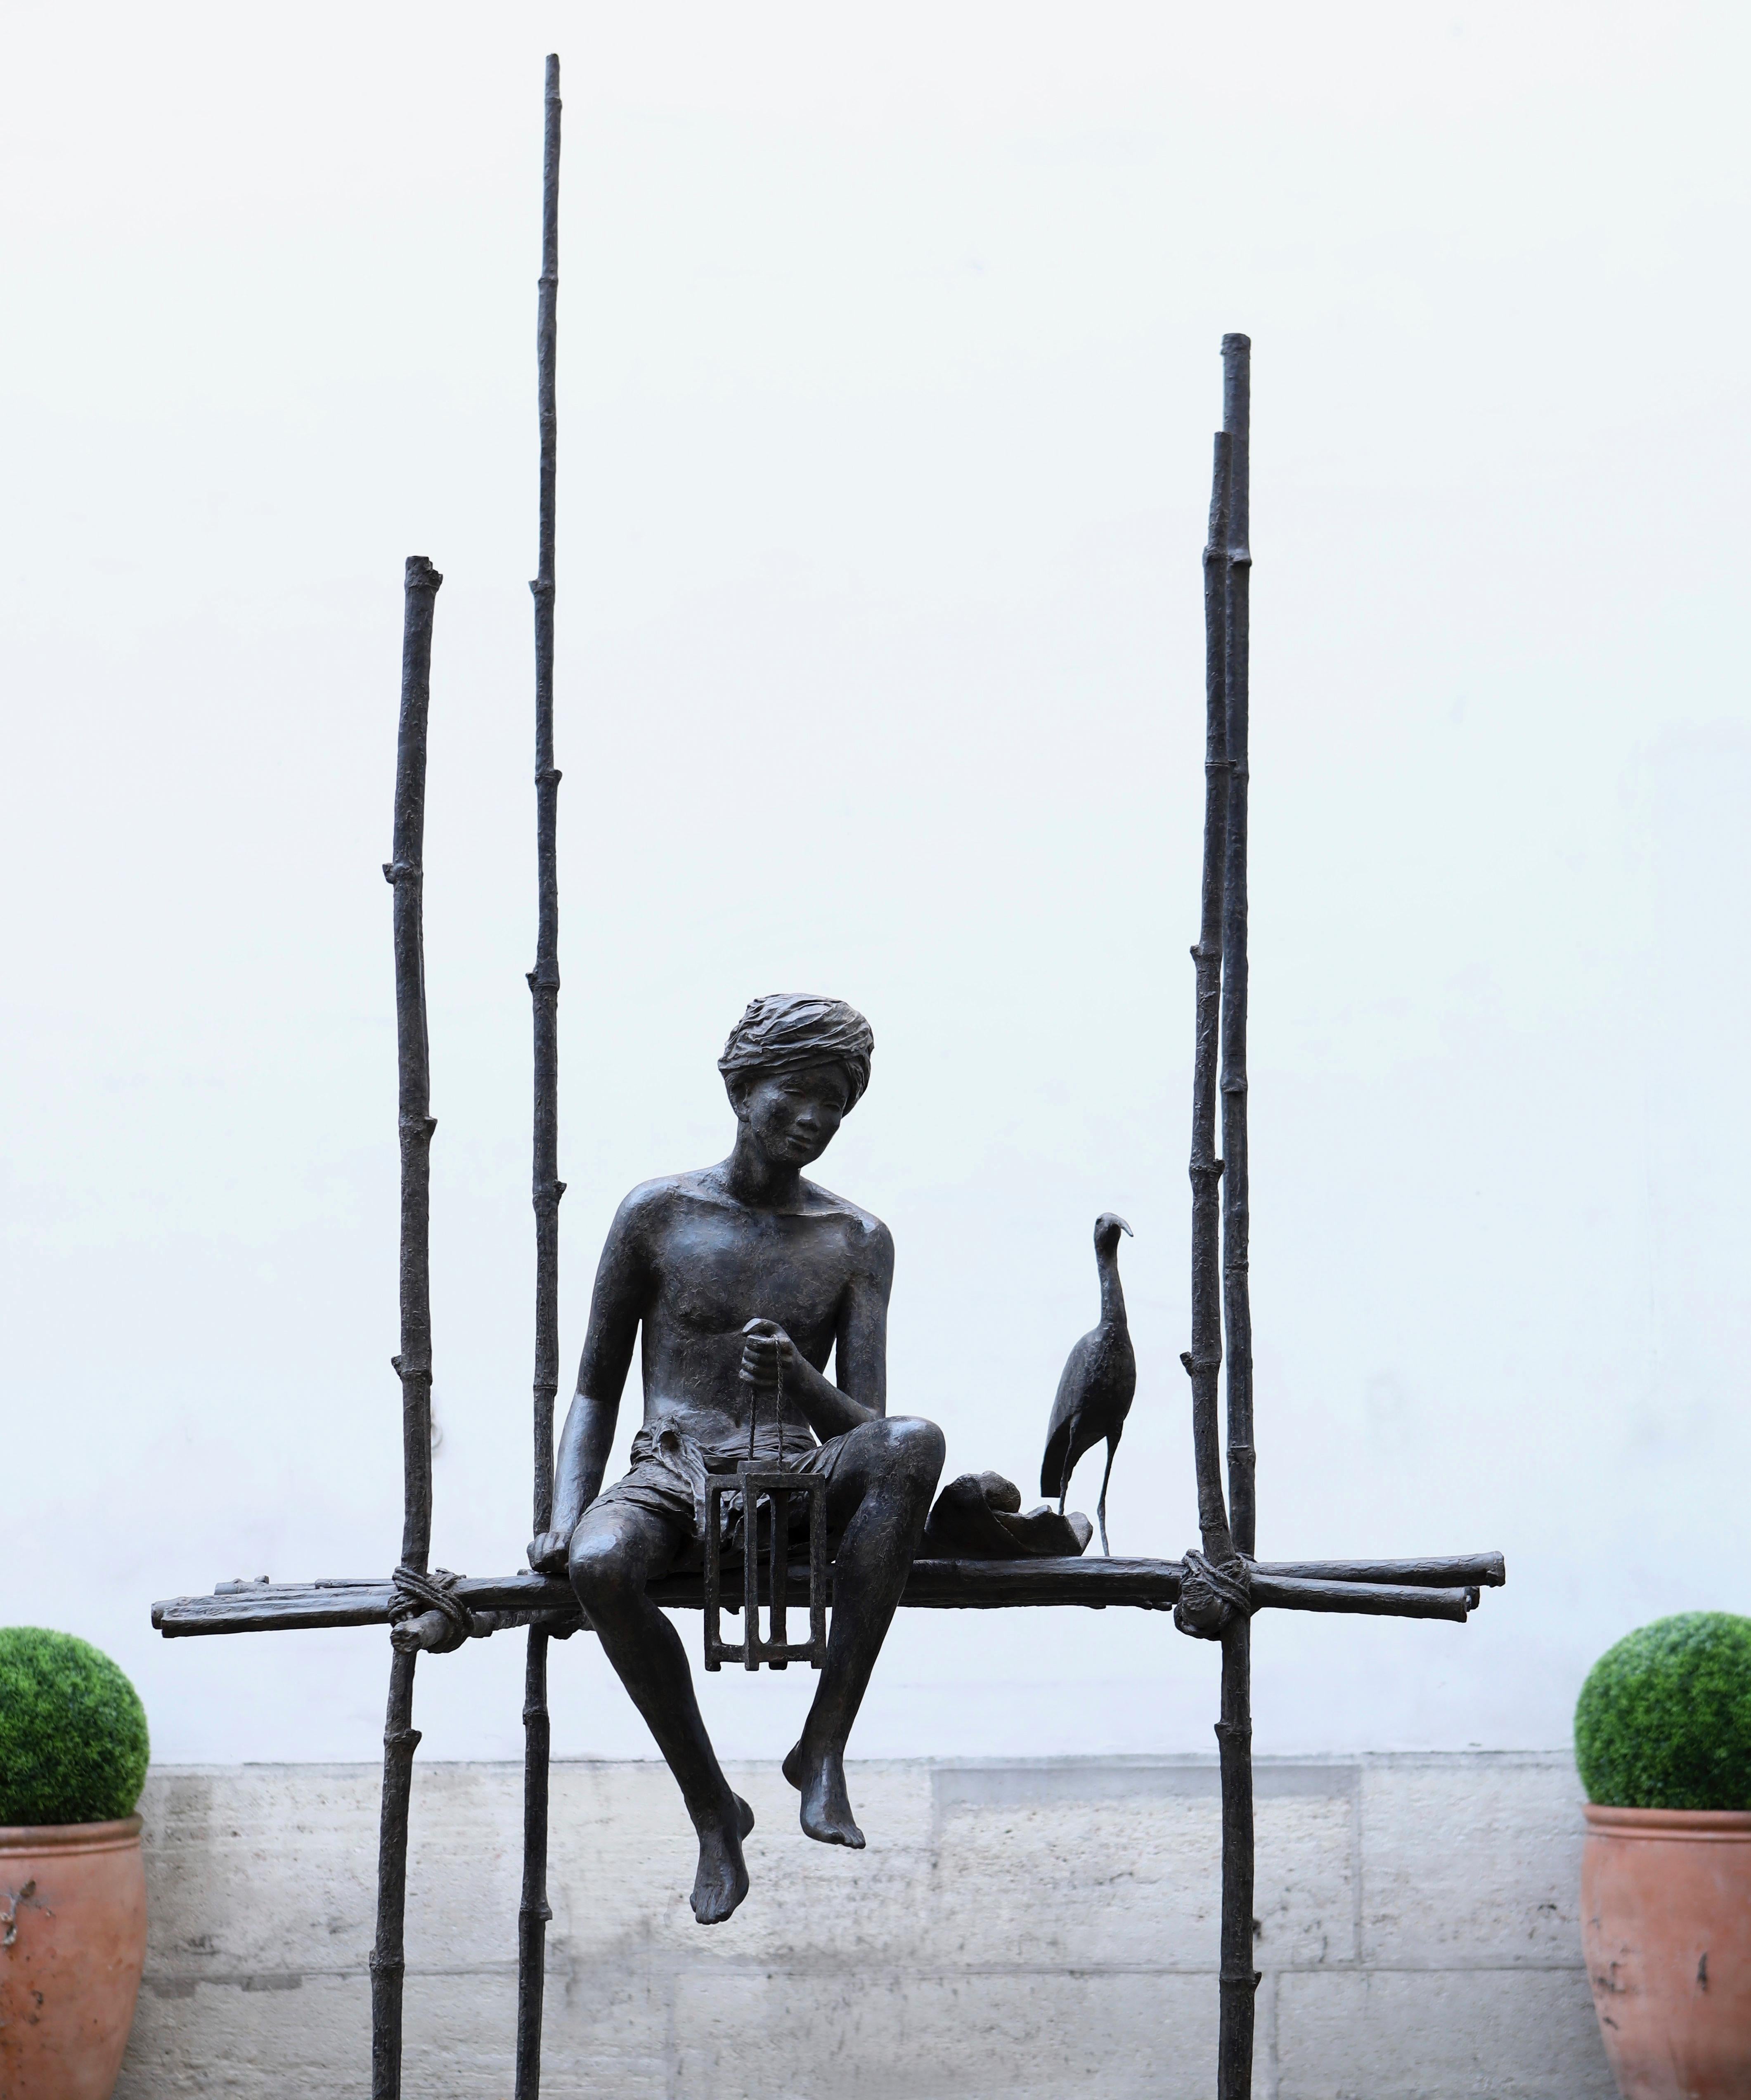 Grand cantique des pilotis, Large outdoor bronze sculpture